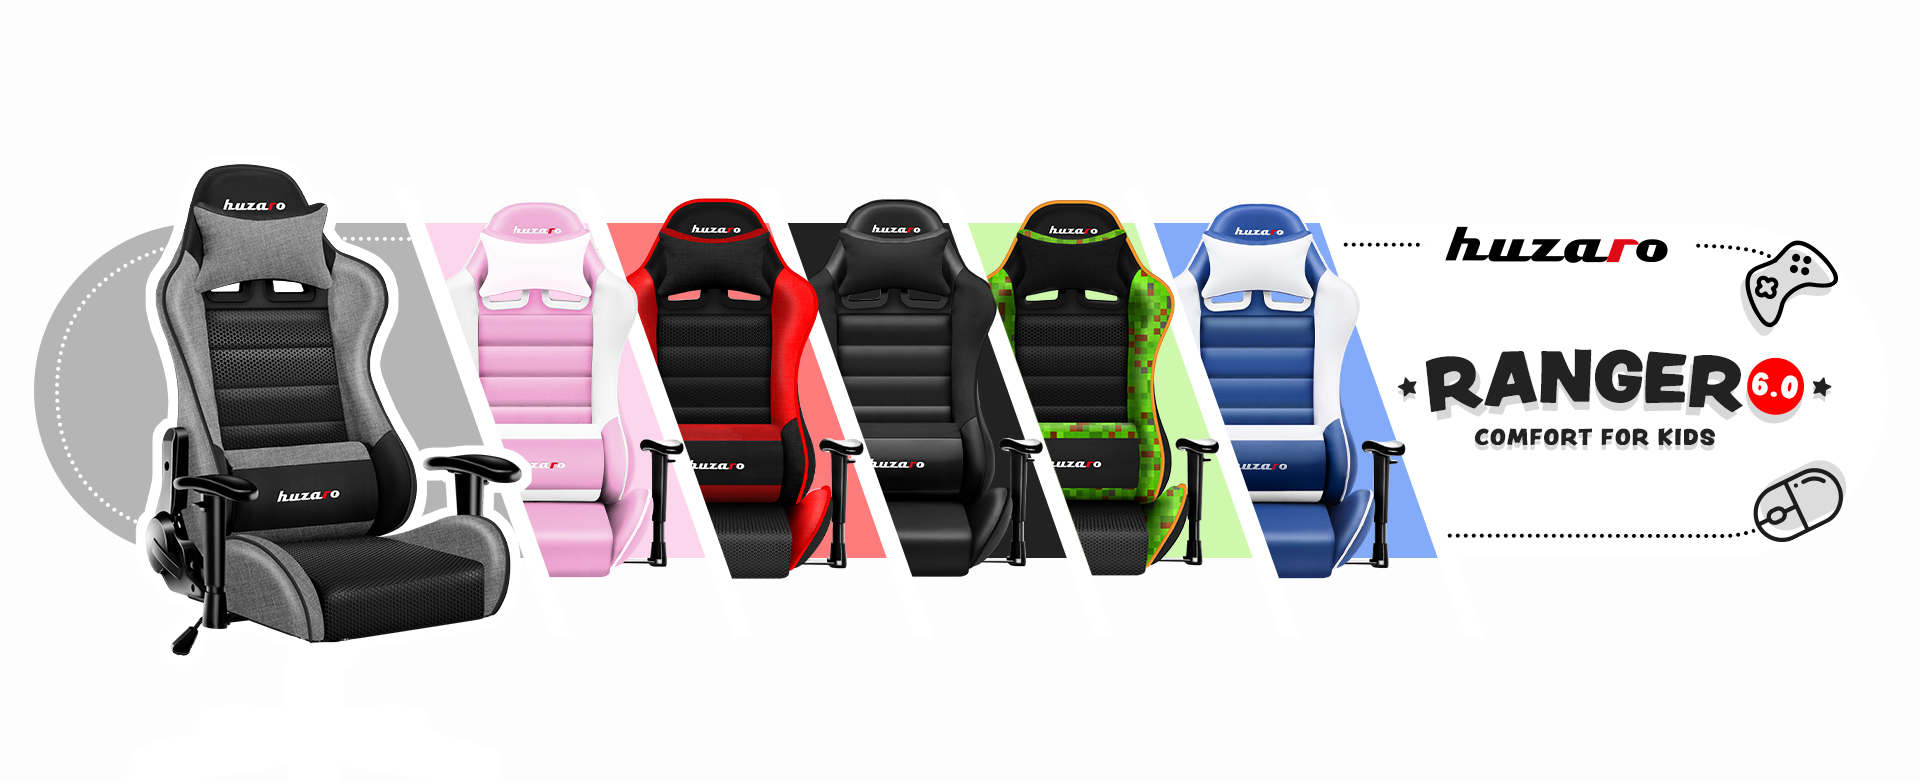 Dostępne kolory fotela Ranger 6.0